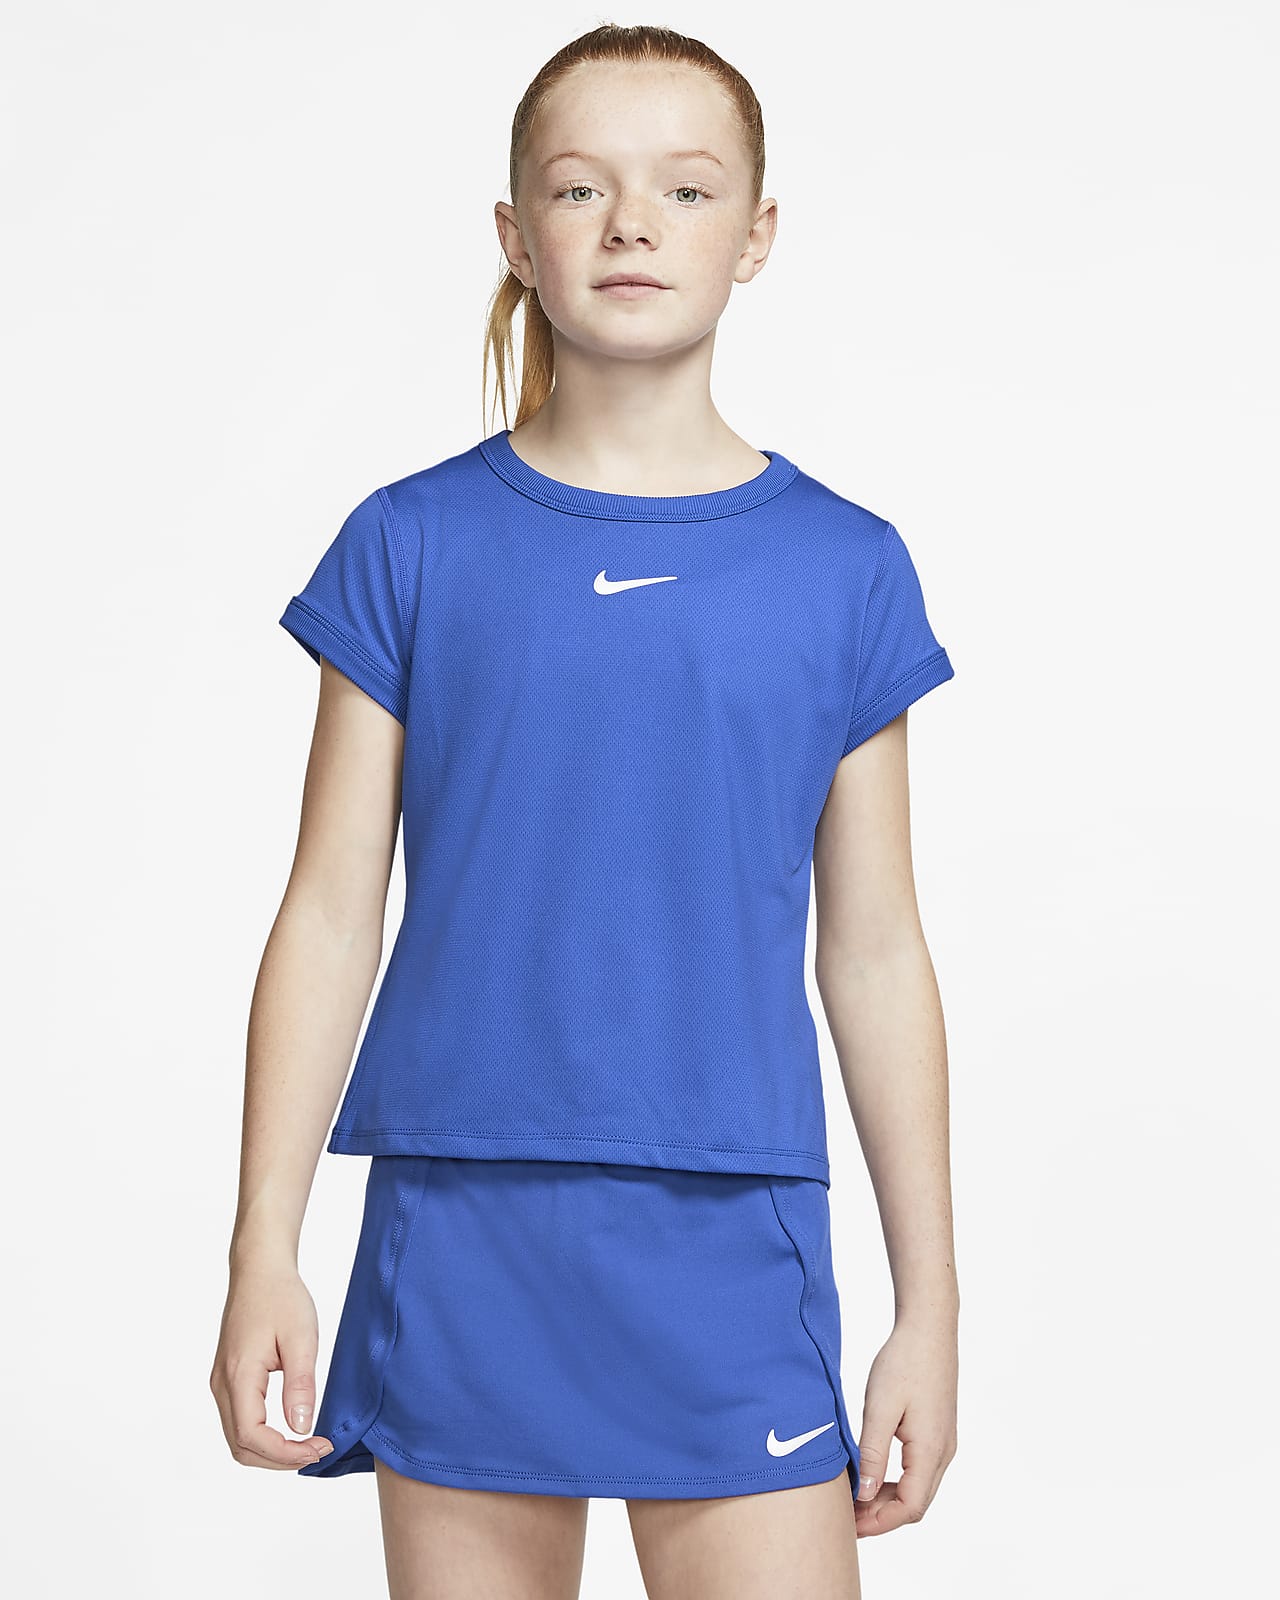 NikeCourt Dri-FIT Big Kids' (Girls') Tennis Top